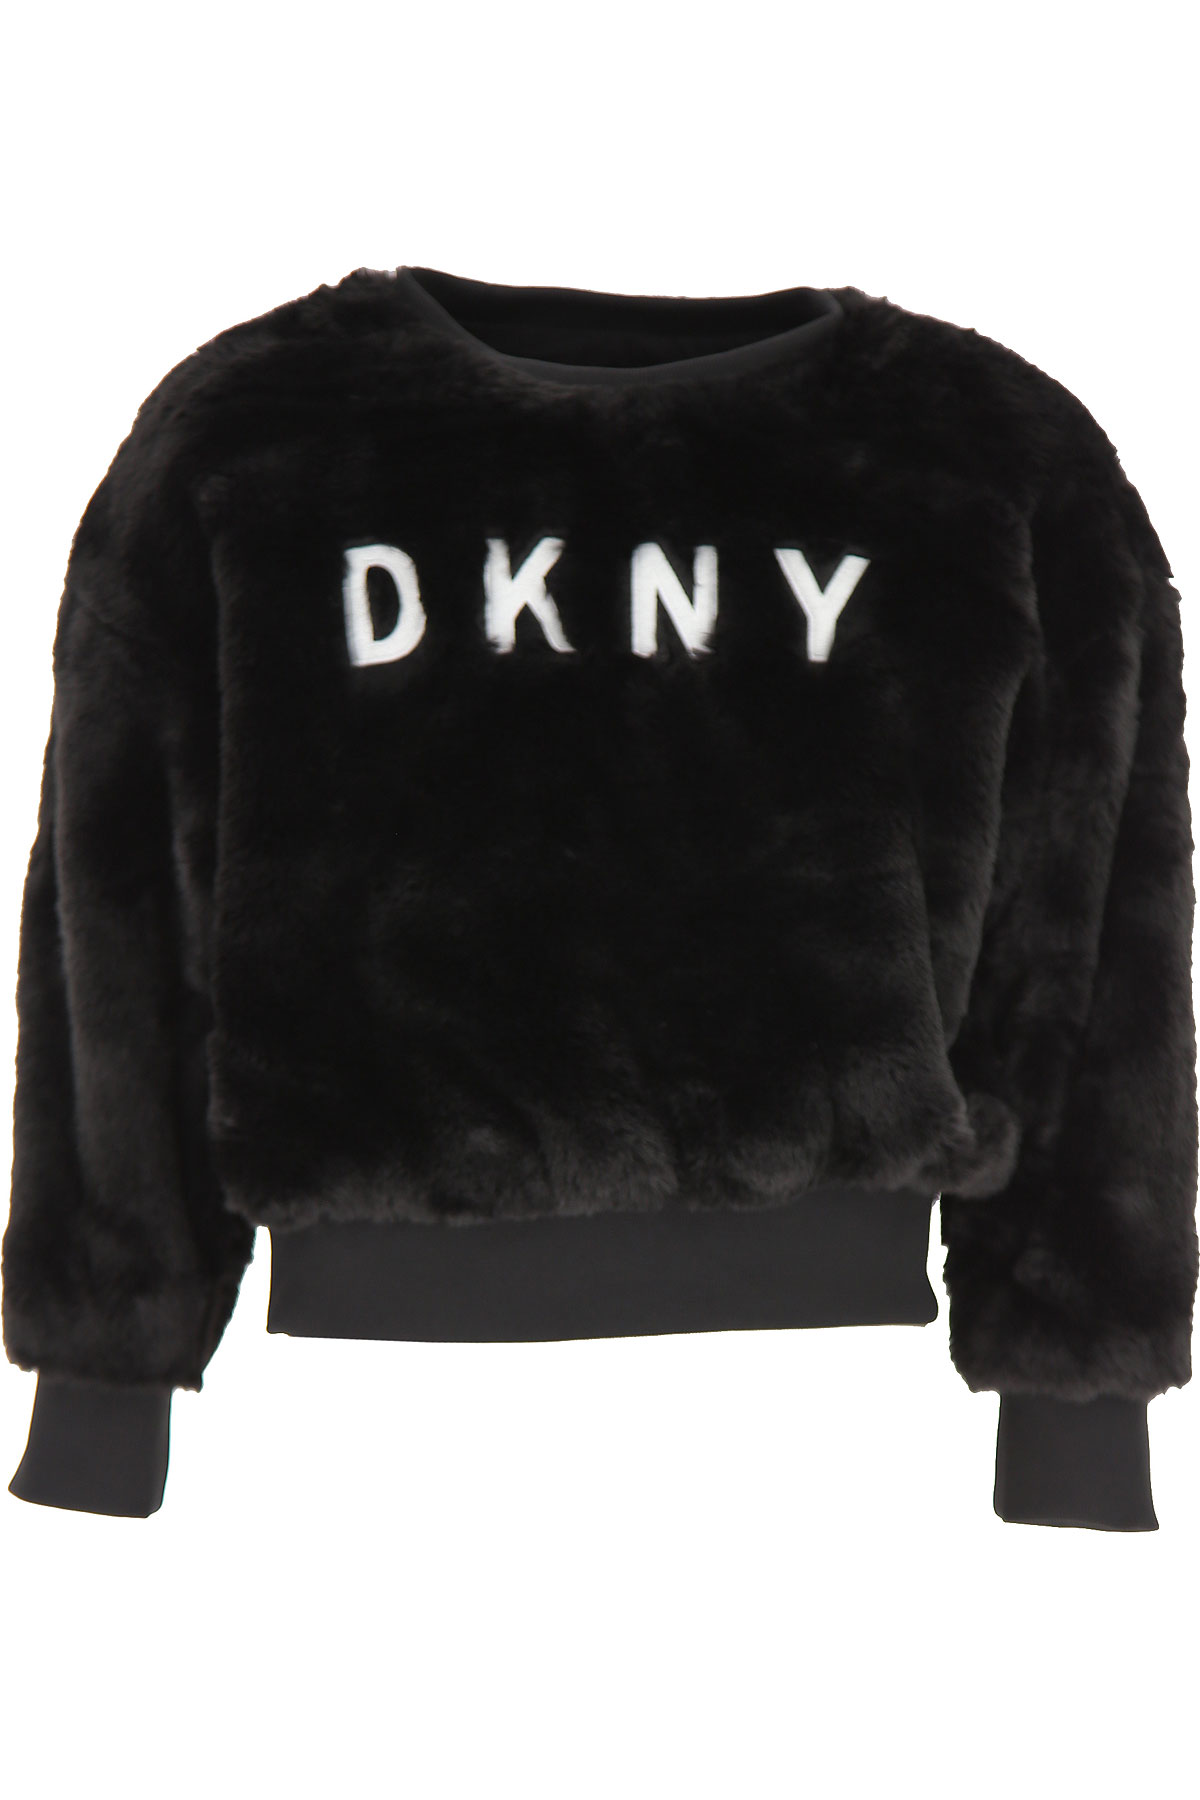 DKNY Kinder Sweatshirt & Kapuzenpullover für Mädchen Günstig im Sale, Schwarz, Polyester, 2017, 10Y 14Y 16Y 8Y